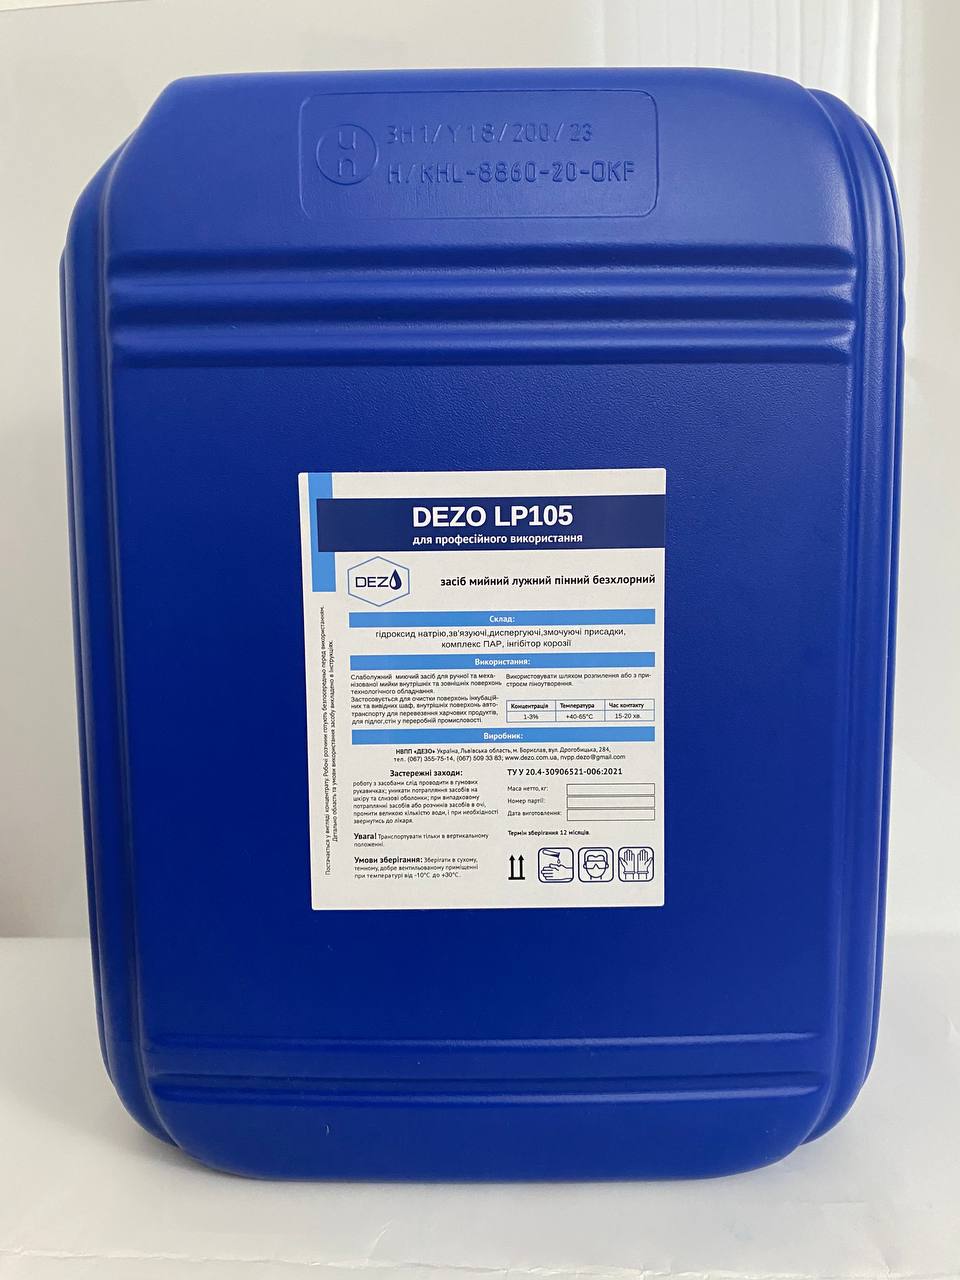 Засіб мийний лужний пінний безхлорний DEZO LP105, 23 кг